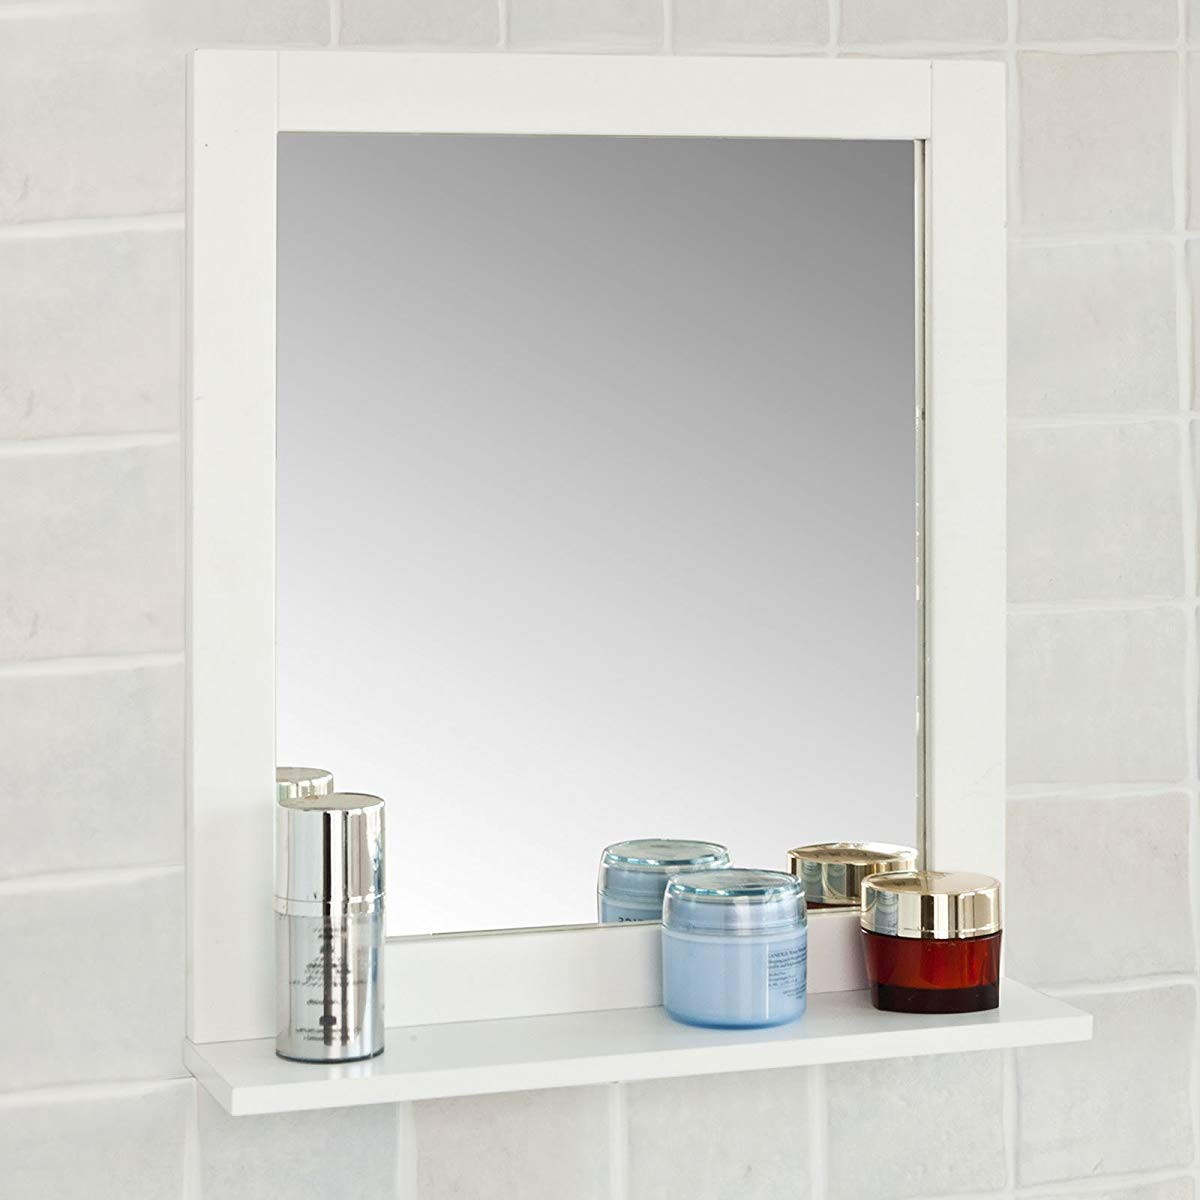 Bathroom Vanity Mirror With Shelf
 Haotian Wall Mounted Bathroom Mirror with Shelf Bathroom